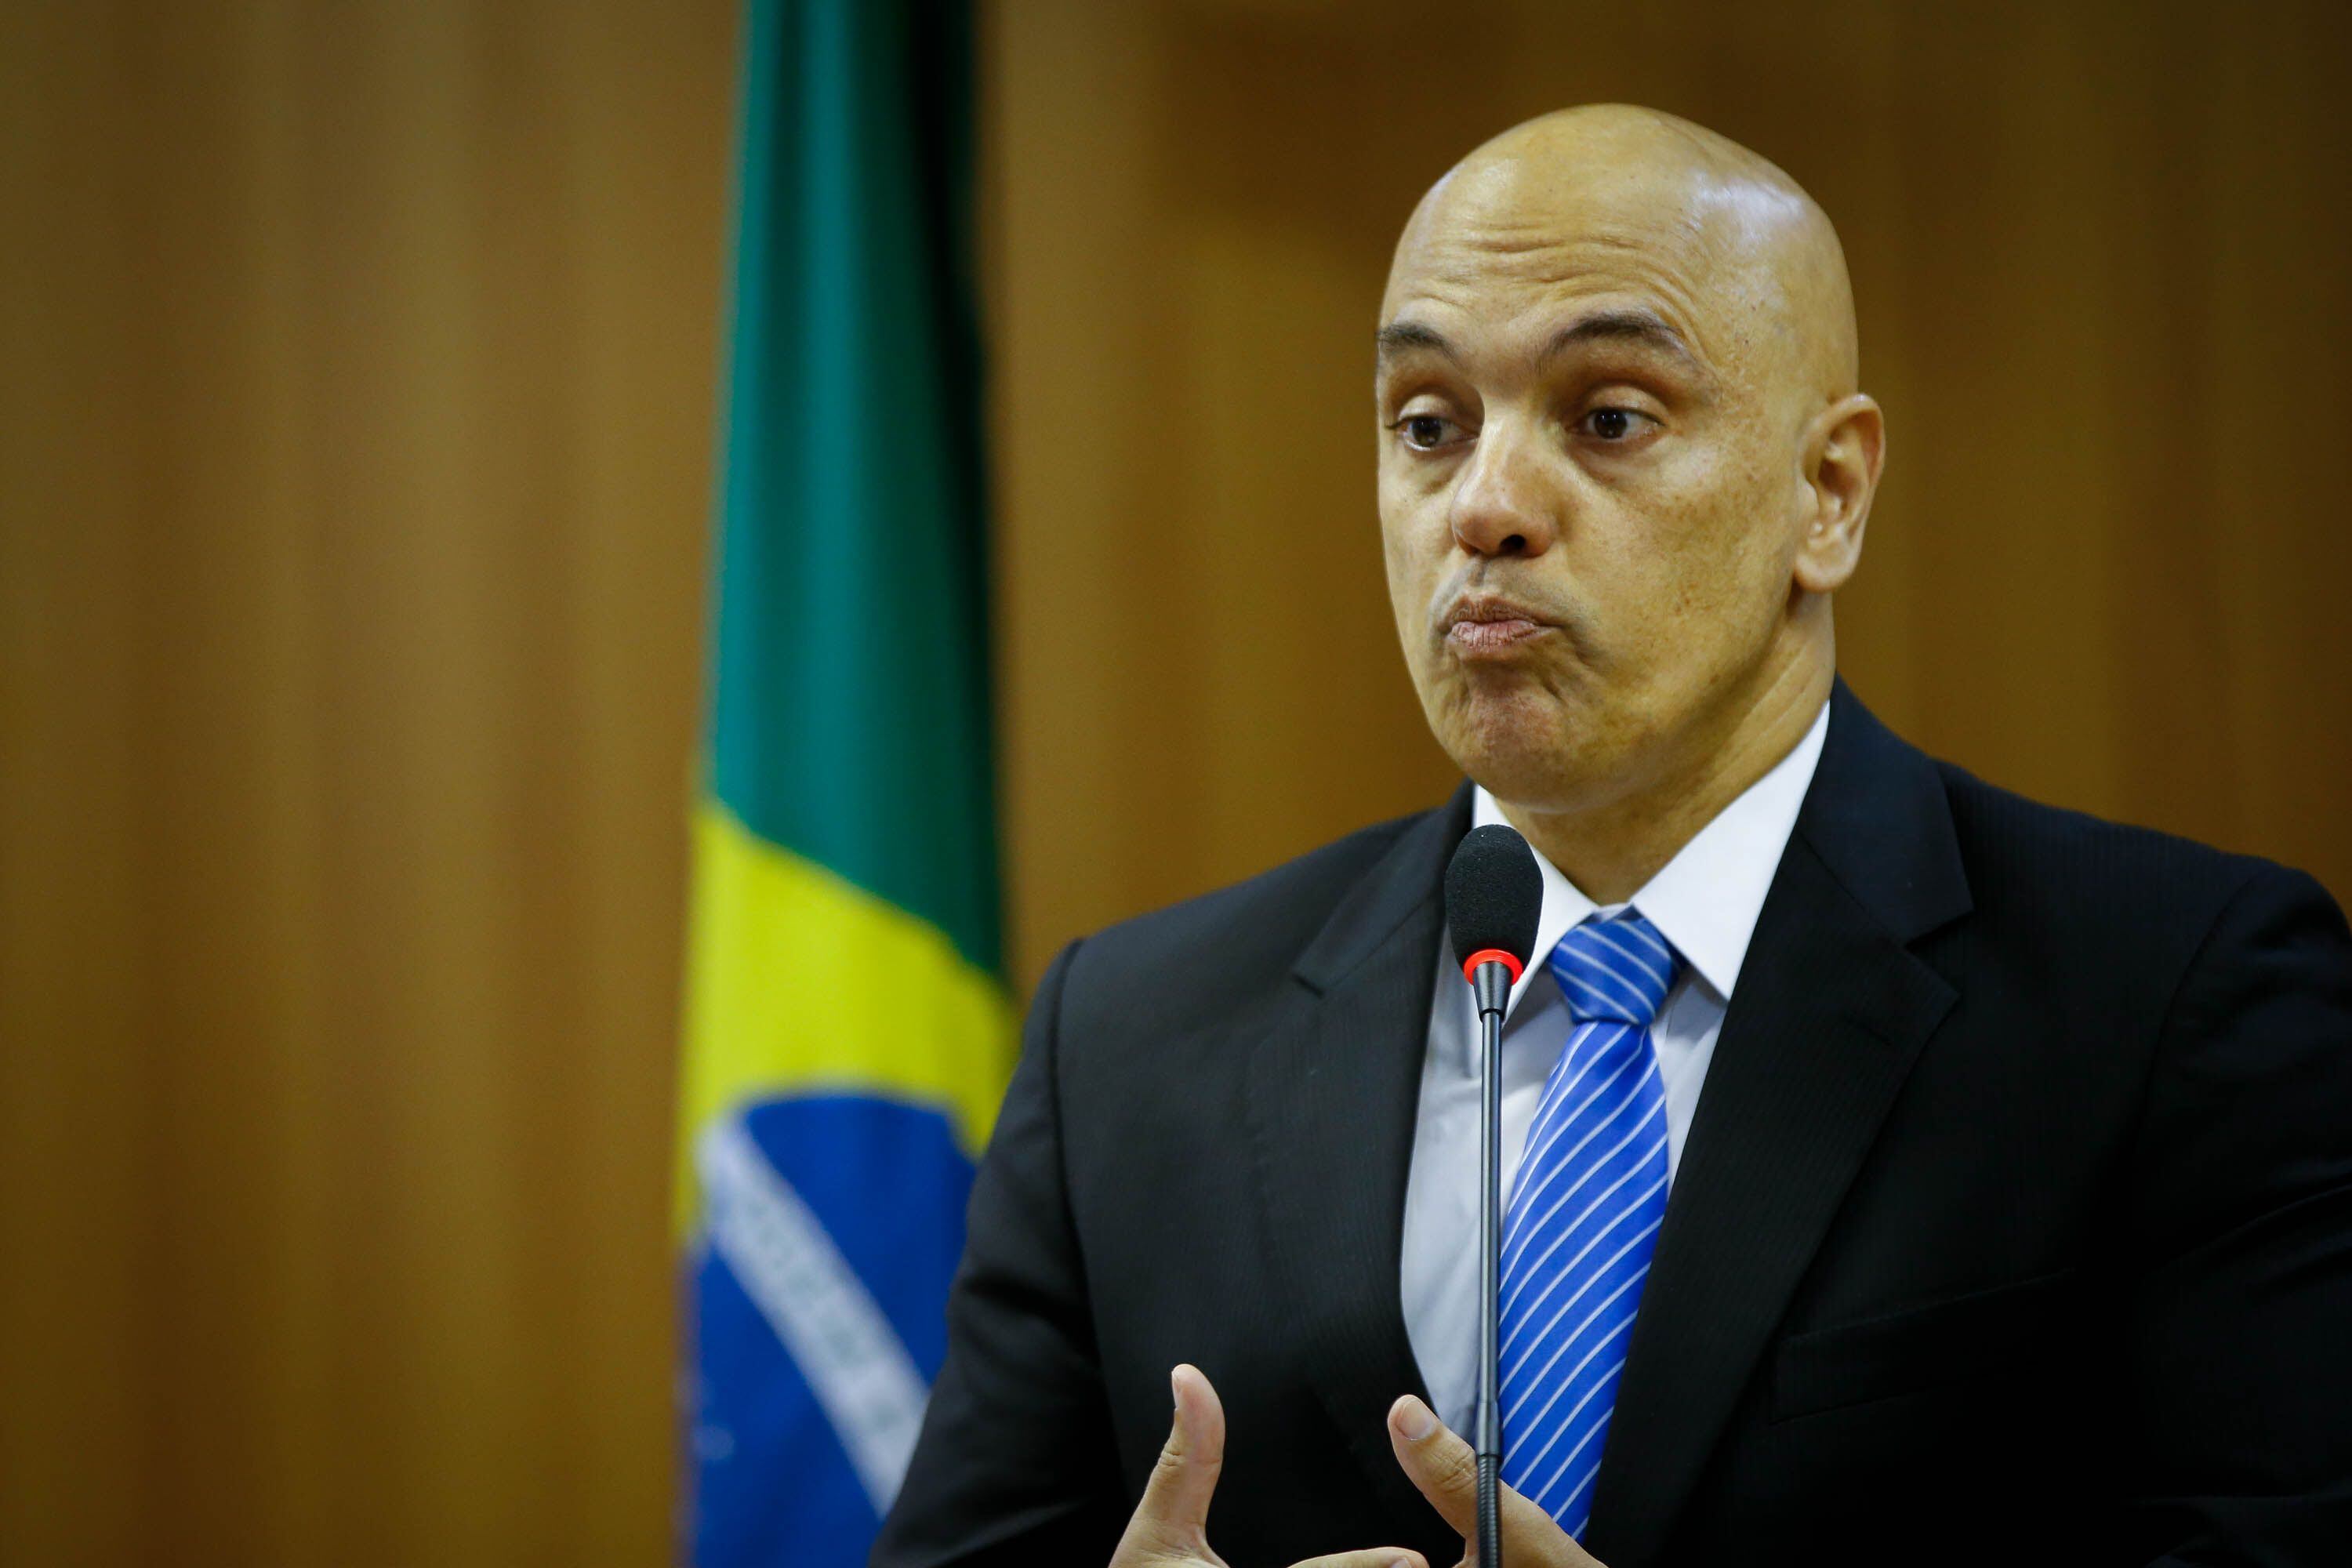 El magistrado Alexandre de Moraes consideró en su decisión que la prohibición de viajar fuera del país impuesta contra el ex presidente, investigado por participar en una supuesta trama golpista, continúa siendo “adecuada y necesaria”. (EFE/Fernando Bizerra Jr)